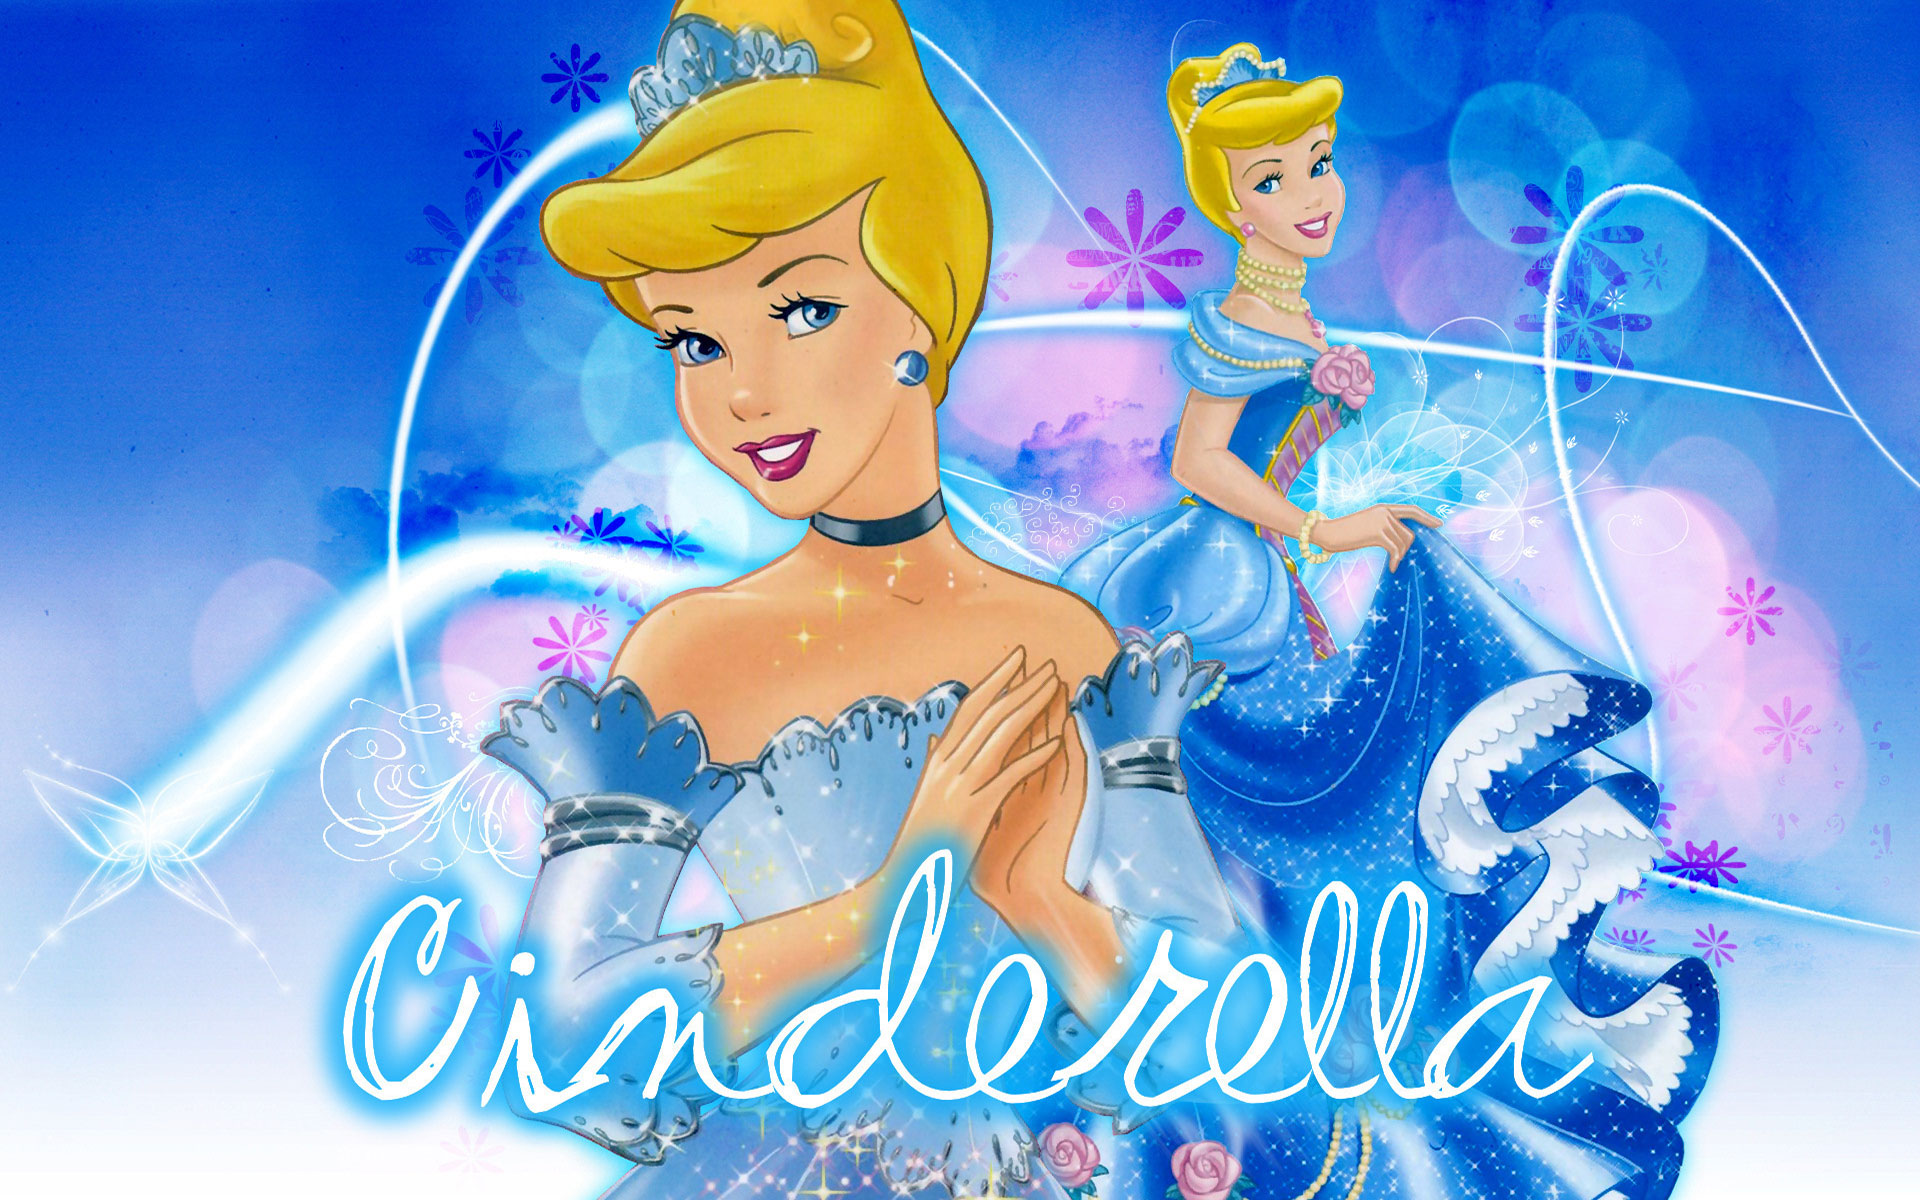 Cinderella  Cinderella art Cinderella wallpaper Cinderella